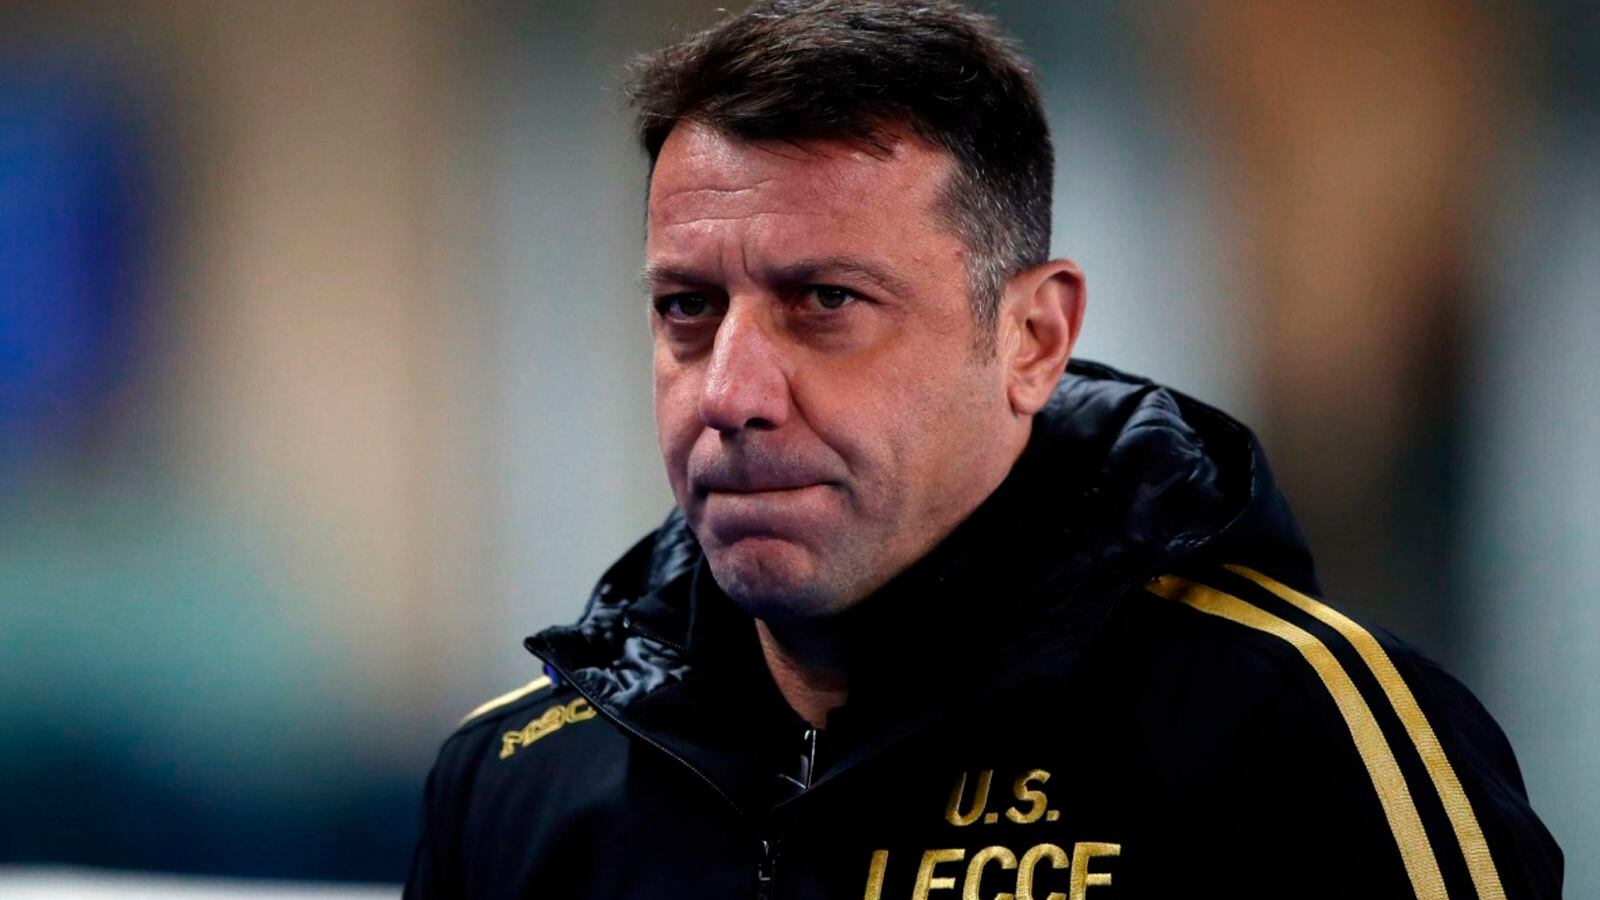 Cabezazo de entrenador Roberto D'Aversa a rival termina en despido. (Foto: Getty Images)